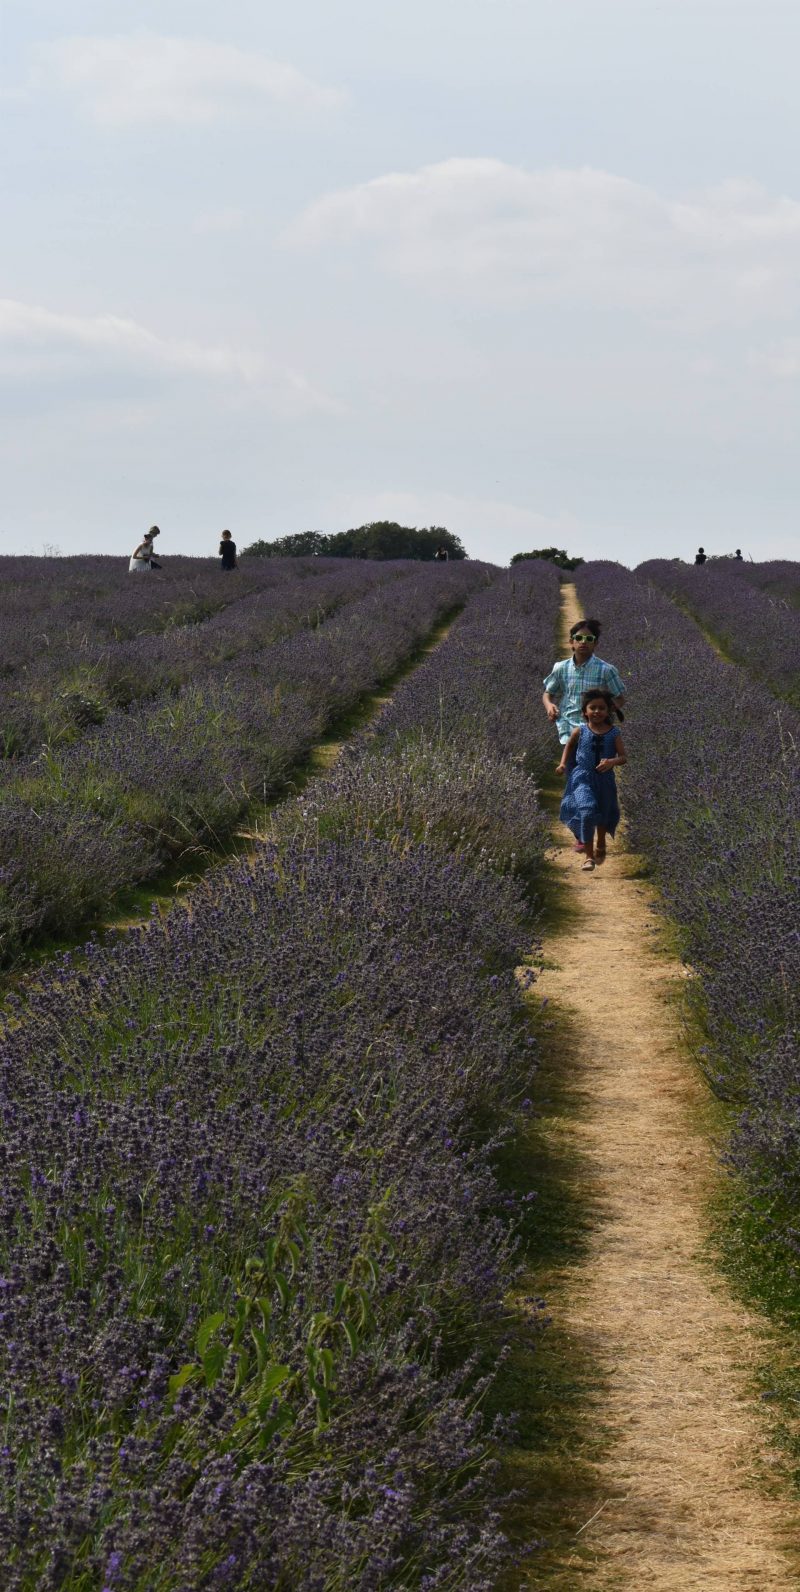 Mayfield Lavender Fields